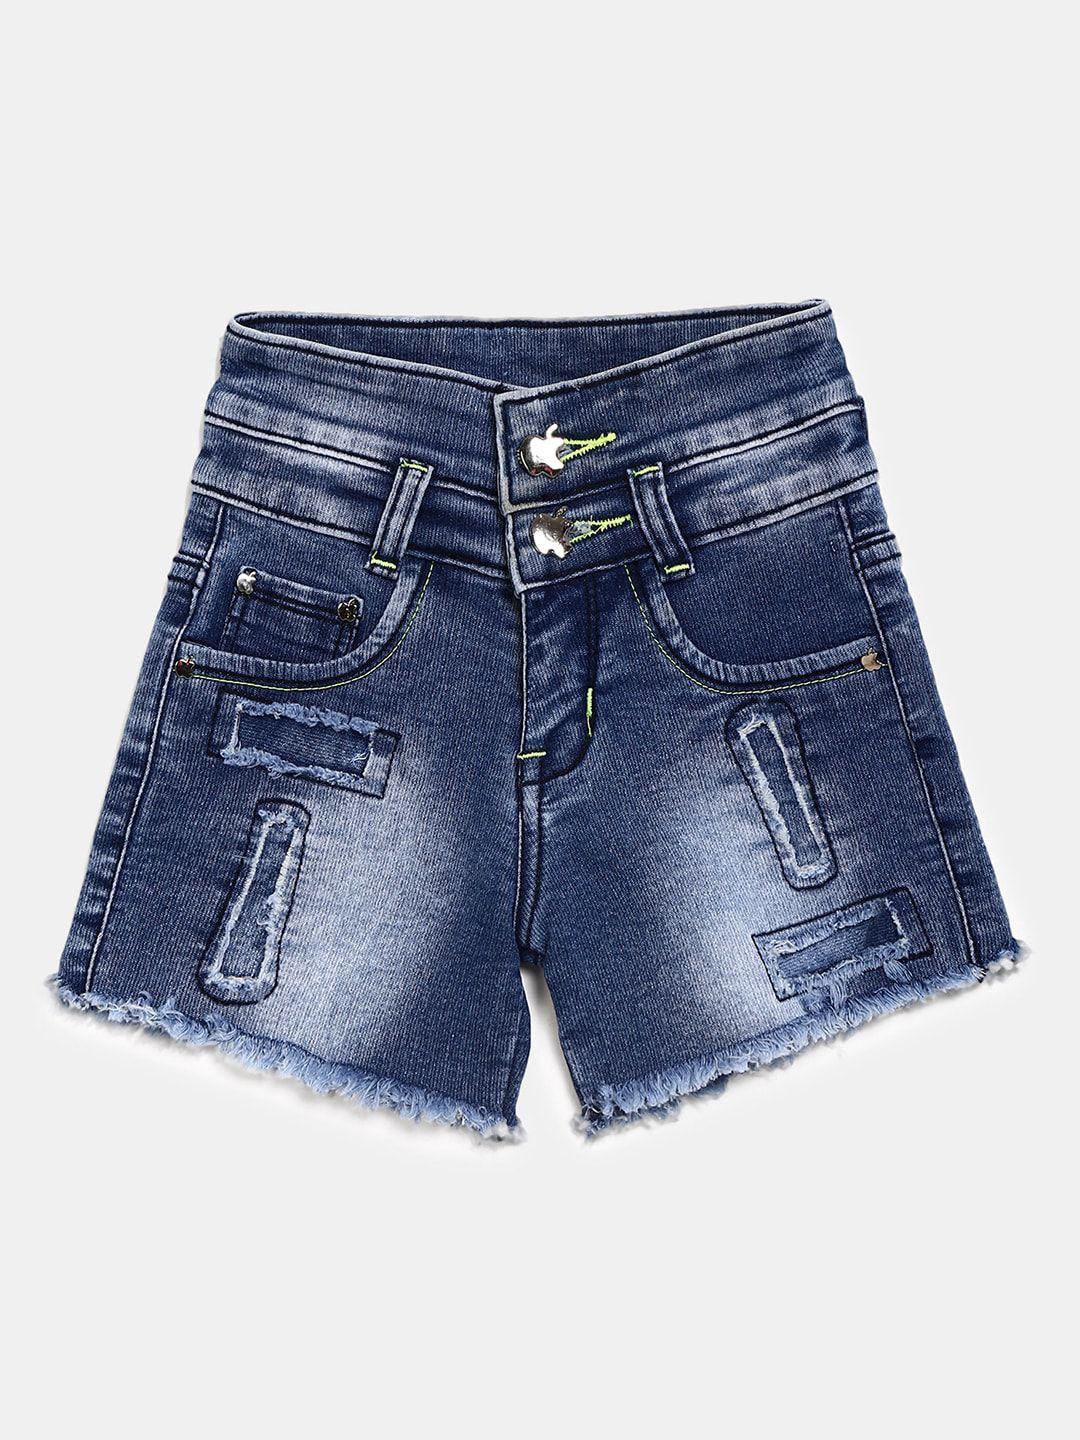 v-mart unisex kids blue washed denim outdoor denim shorts